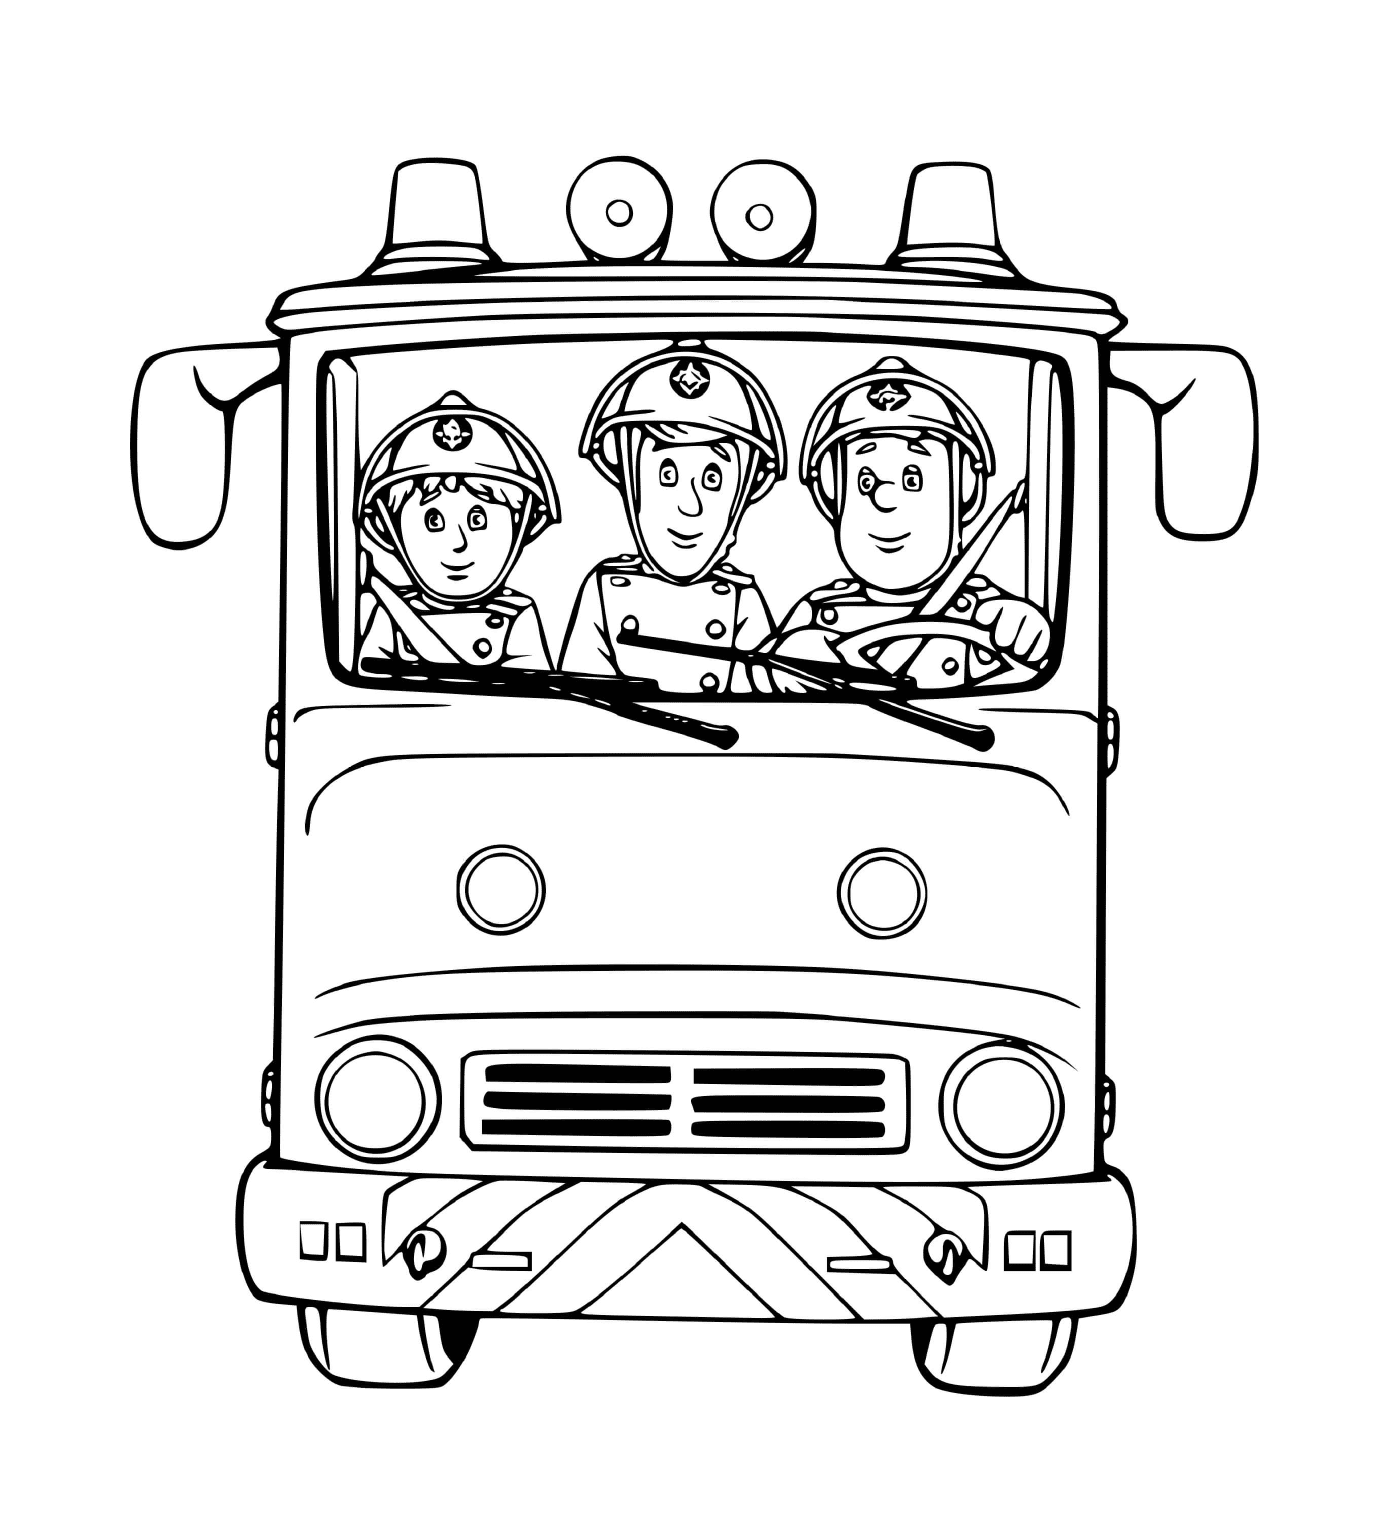  消防车,三架消防车准备 